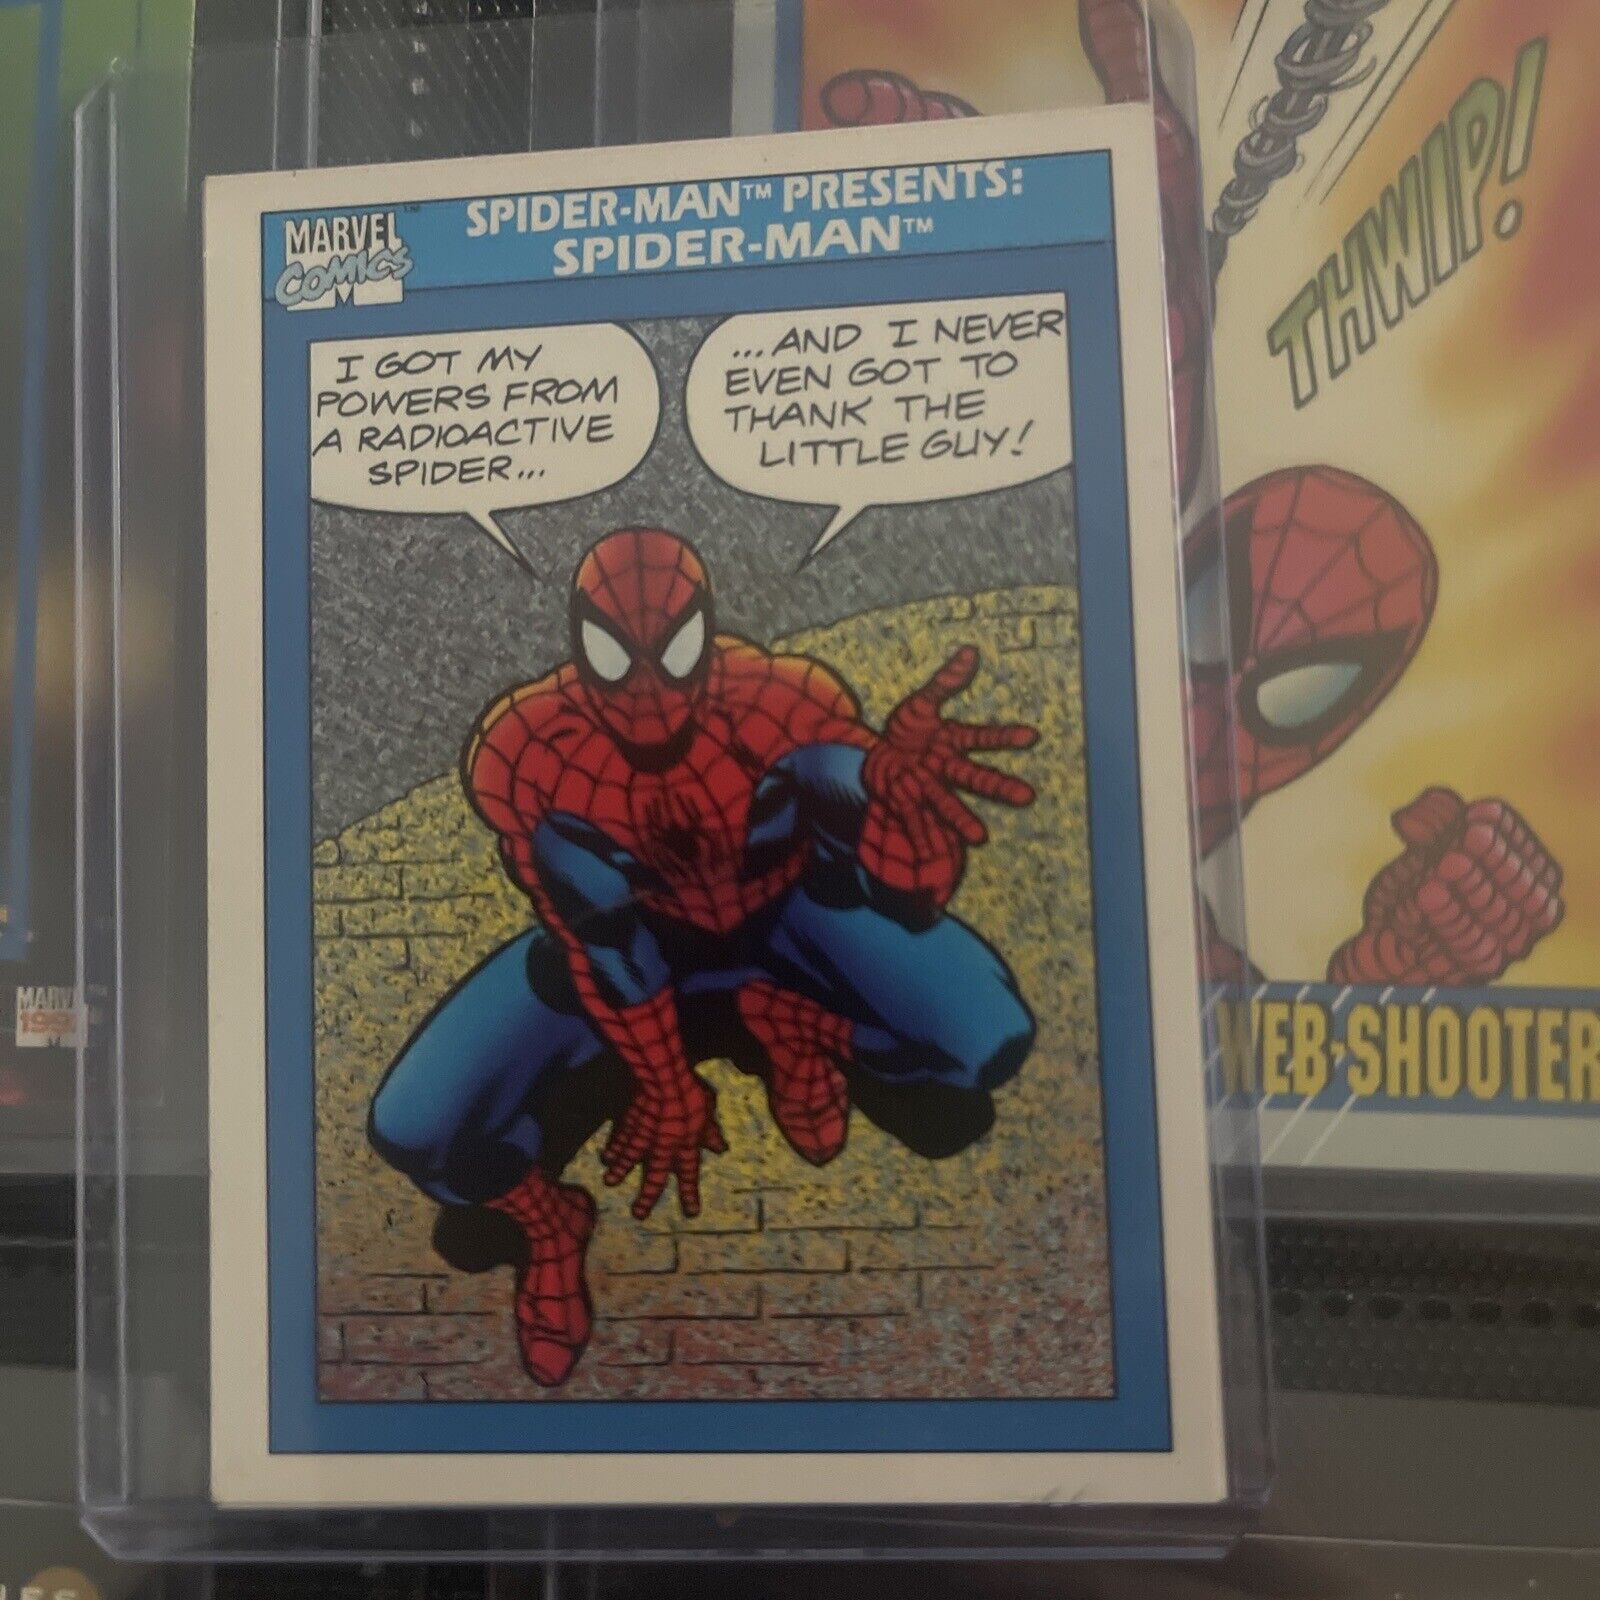 Spider-Man presents Spider-Man 1990 #149